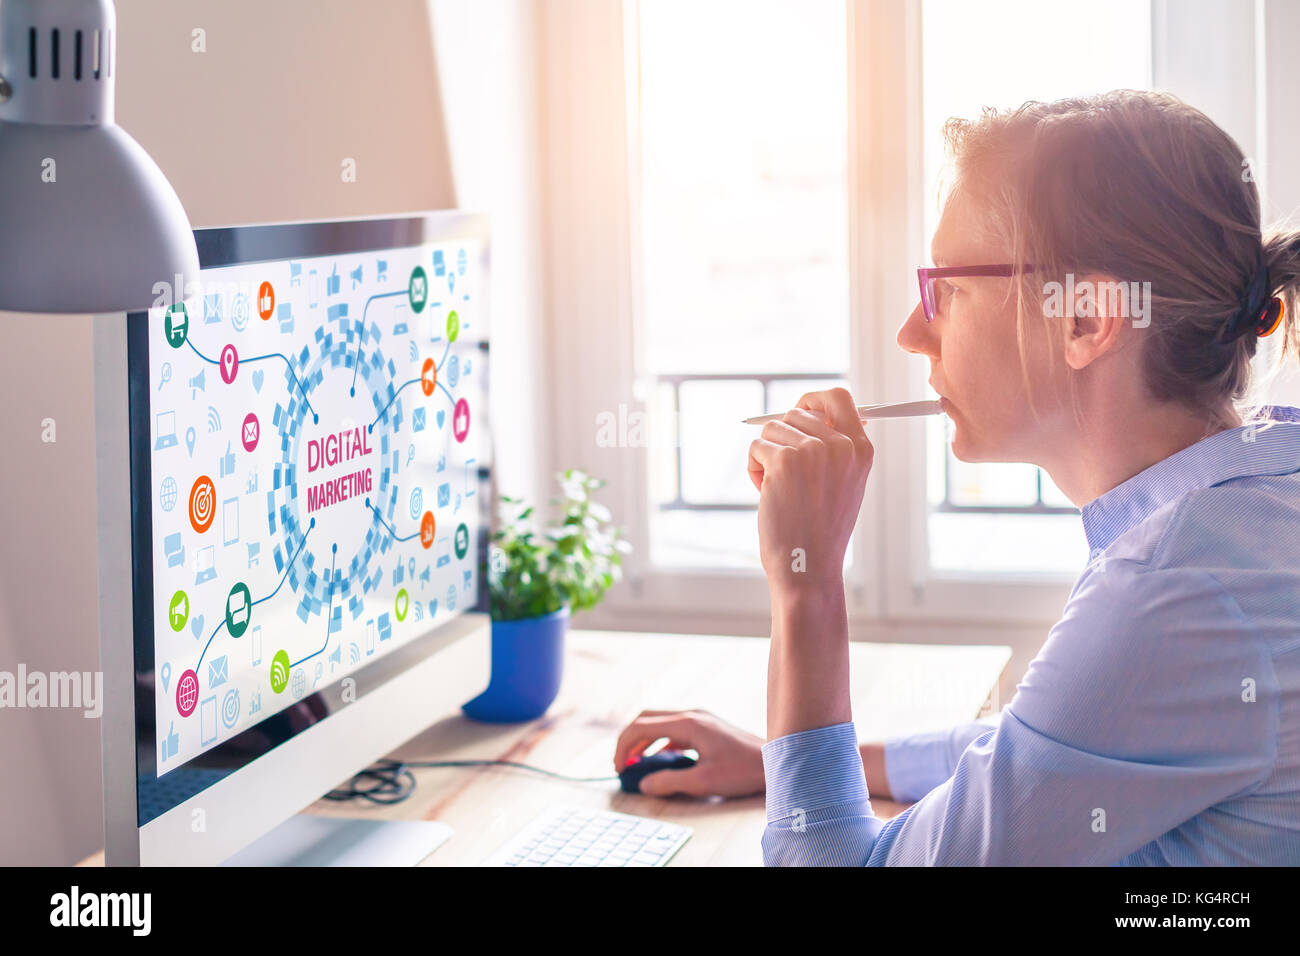 Mujer con un equipo con tecnología de marketing digital concepto sobre la pantalla con iconos sobre el correo electrónico y la red social media analytics y publicidad Foto de stock